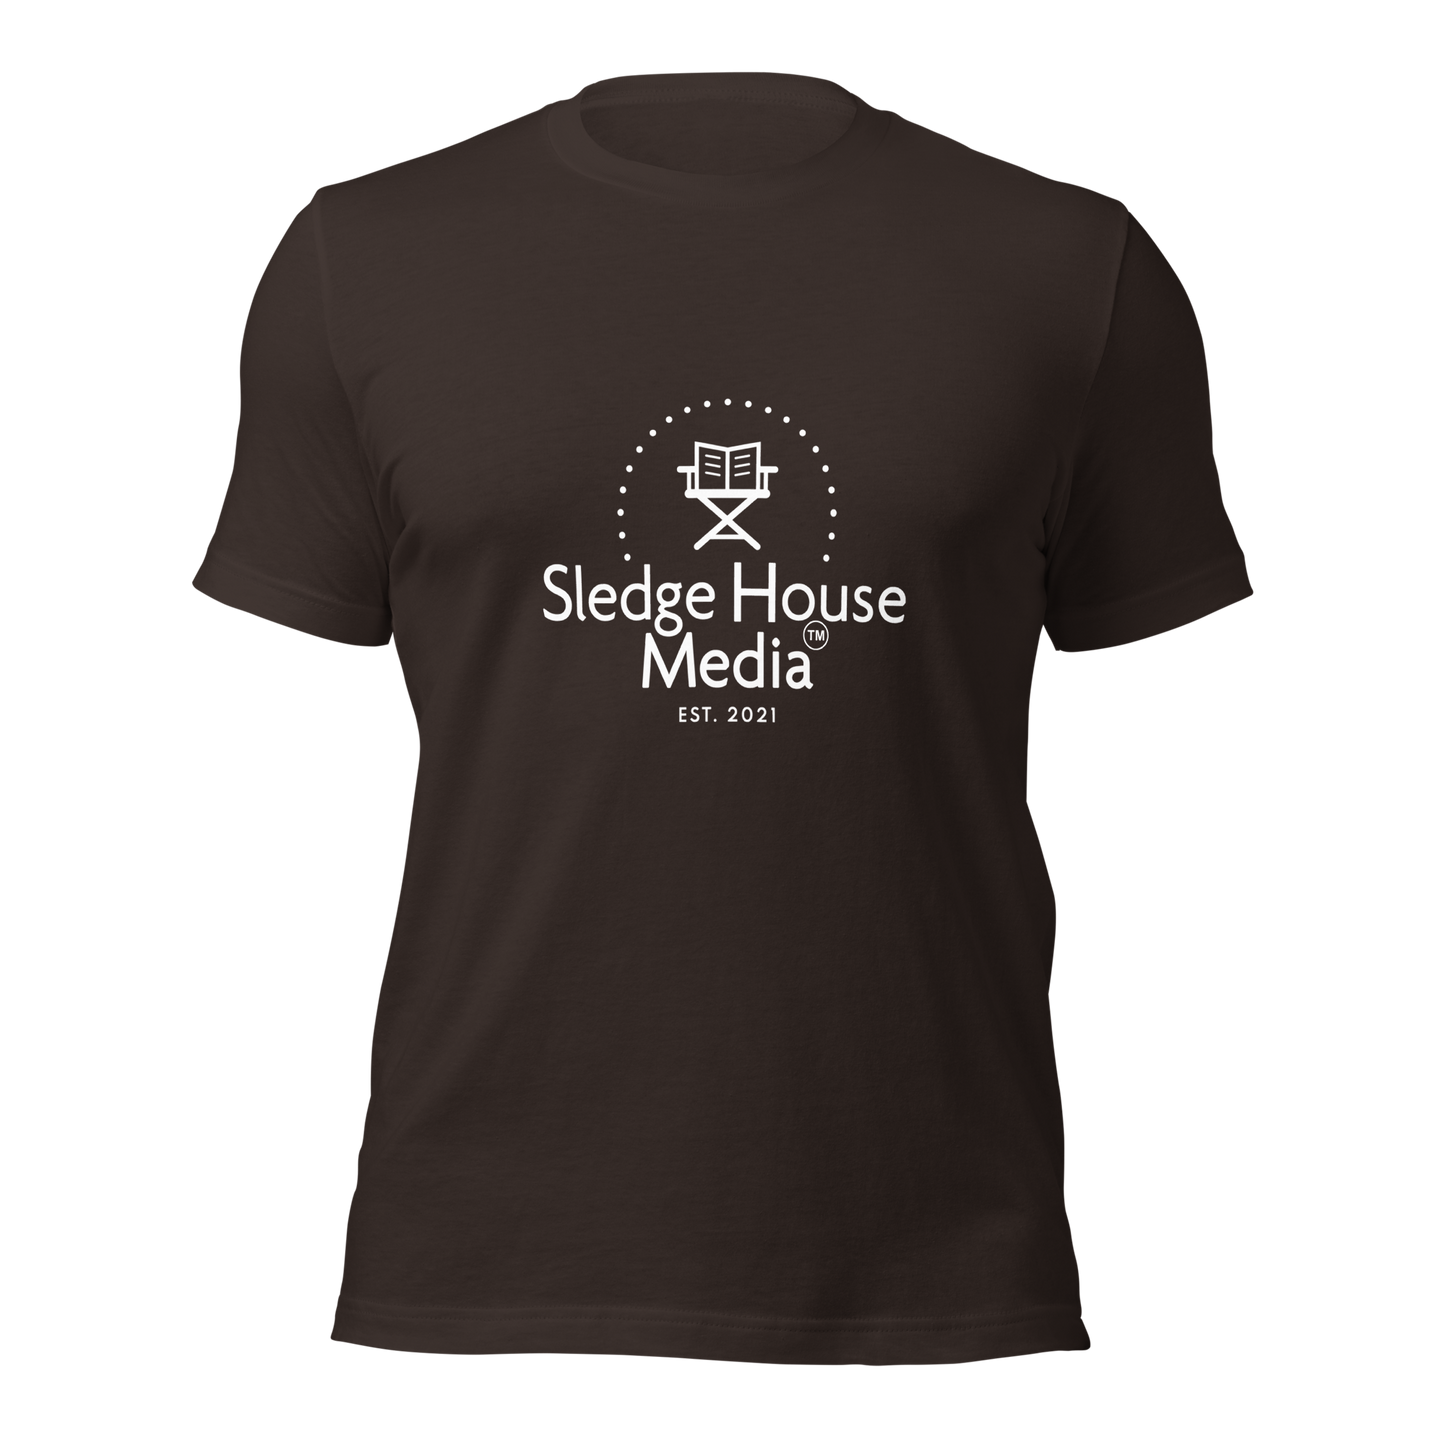 "The OG" Sledge House Media T-shirt unisexe